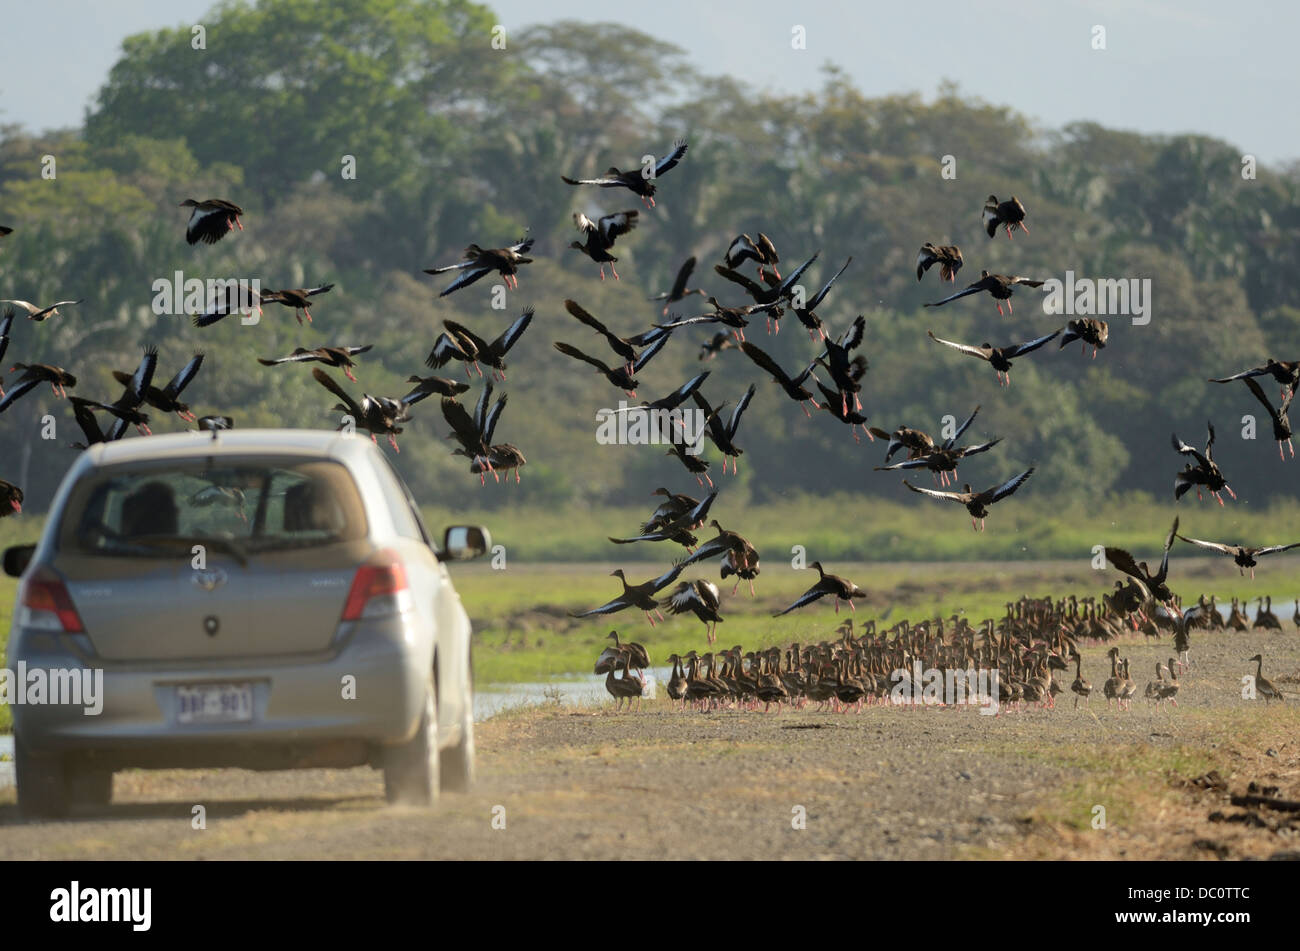 Car flushing Black-bellied Whistling Ducks Stock Photo